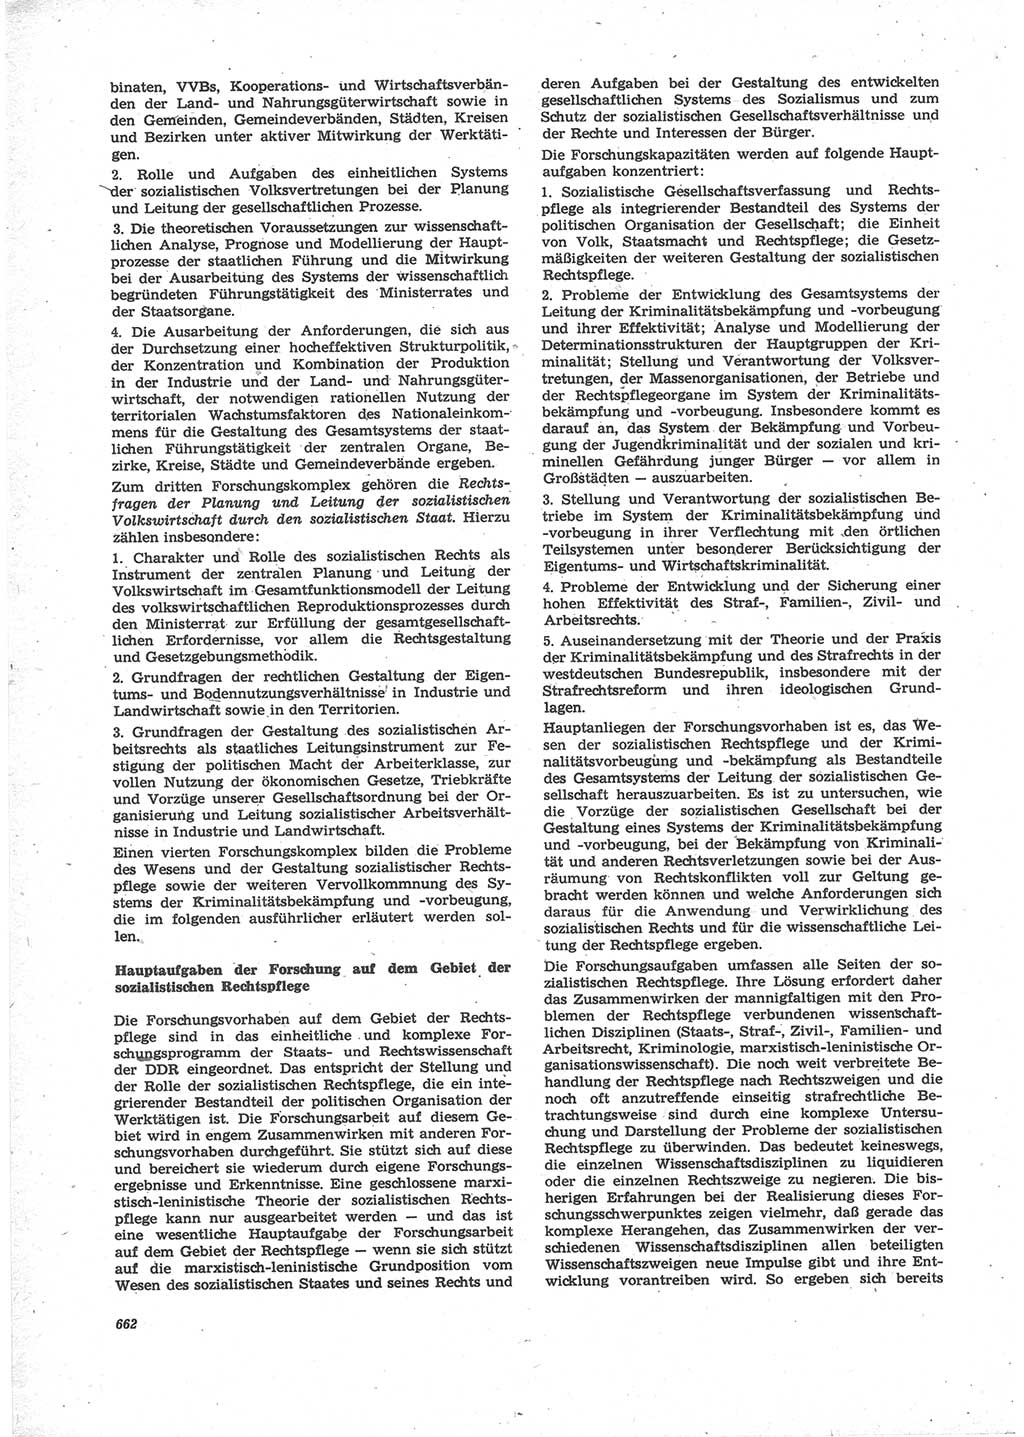 Neue Justiz (NJ), Zeitschrift für Recht und Rechtswissenschaft [Deutsche Demokratische Republik (DDR)], 24. Jahrgang 1970, Seite 662 (NJ DDR 1970, S. 662)